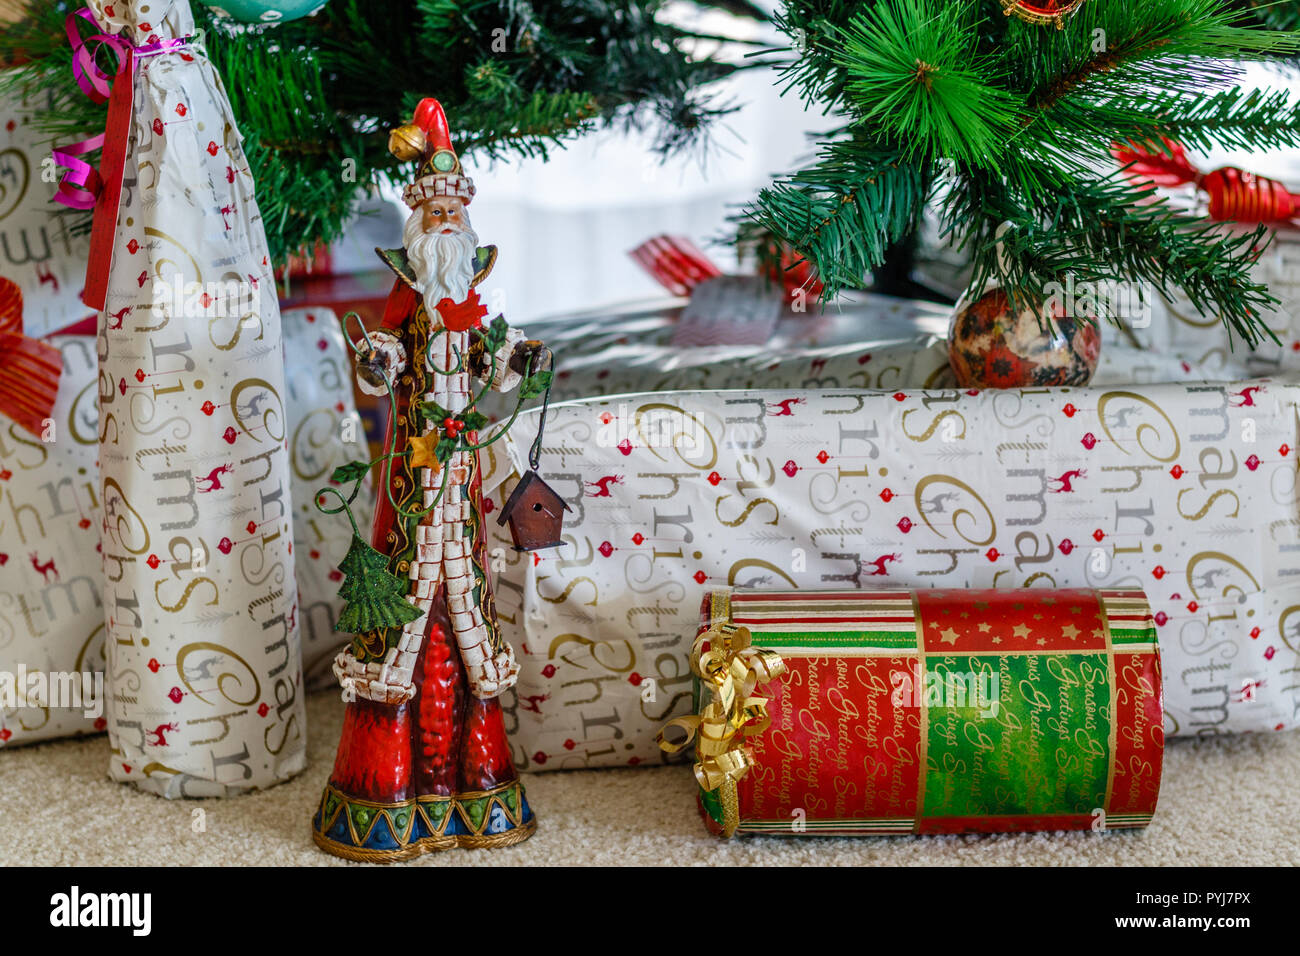 Gingerbread Man Active 1 or 4 pc set Christmas Stocking Christmas Tree Shiba Inu Holiday Christmas Postcards Christmas Wreath